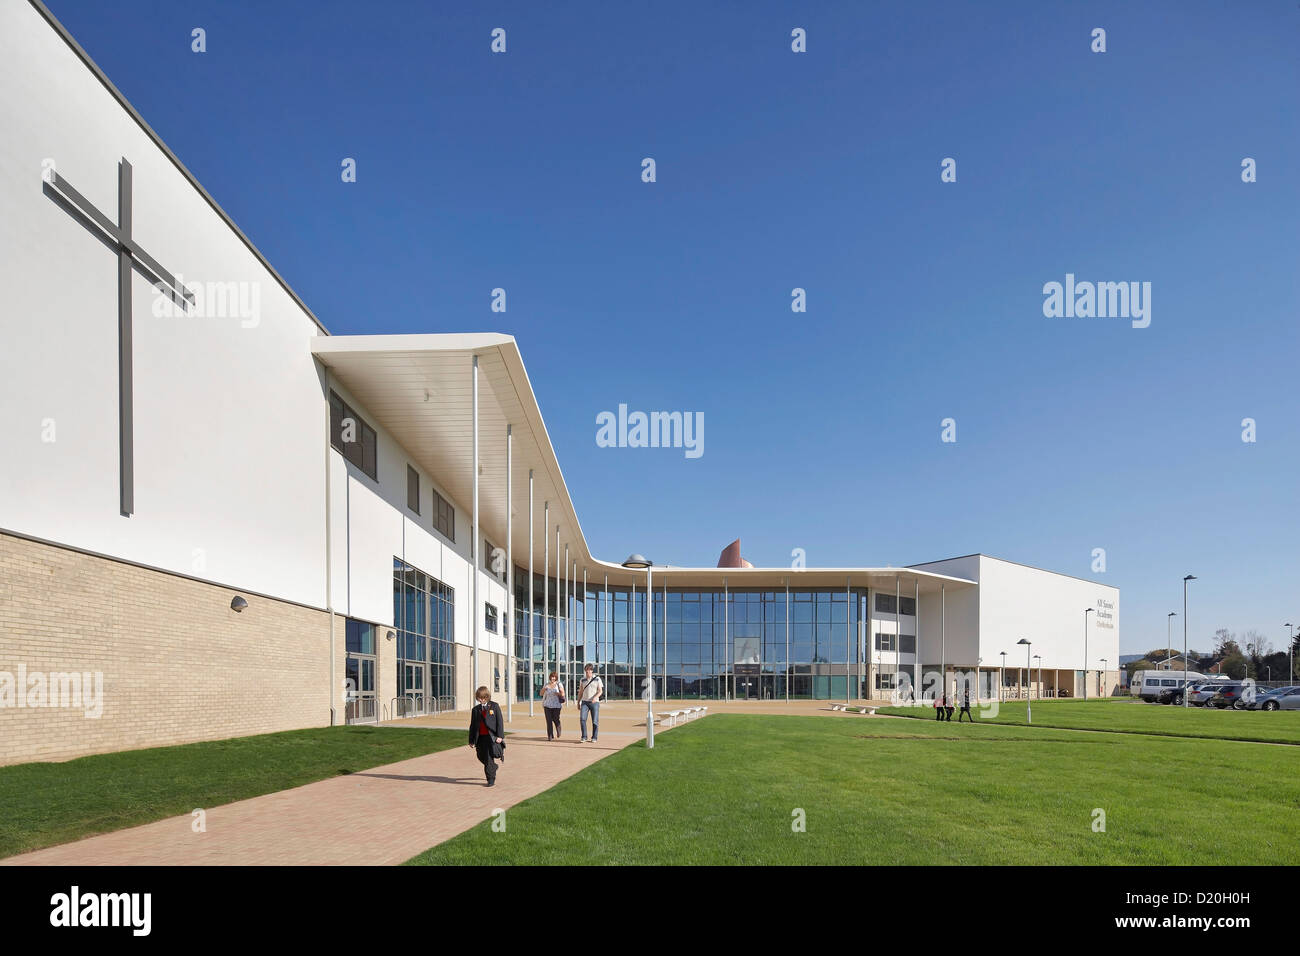 Alle Heiligen Akademie, Chelteham, Vereinigtes Königreich. Architekt: Nicholas Hare Architekten LLP, 2012. Perspektive der Fassade mit wichtigsten e Stockfoto